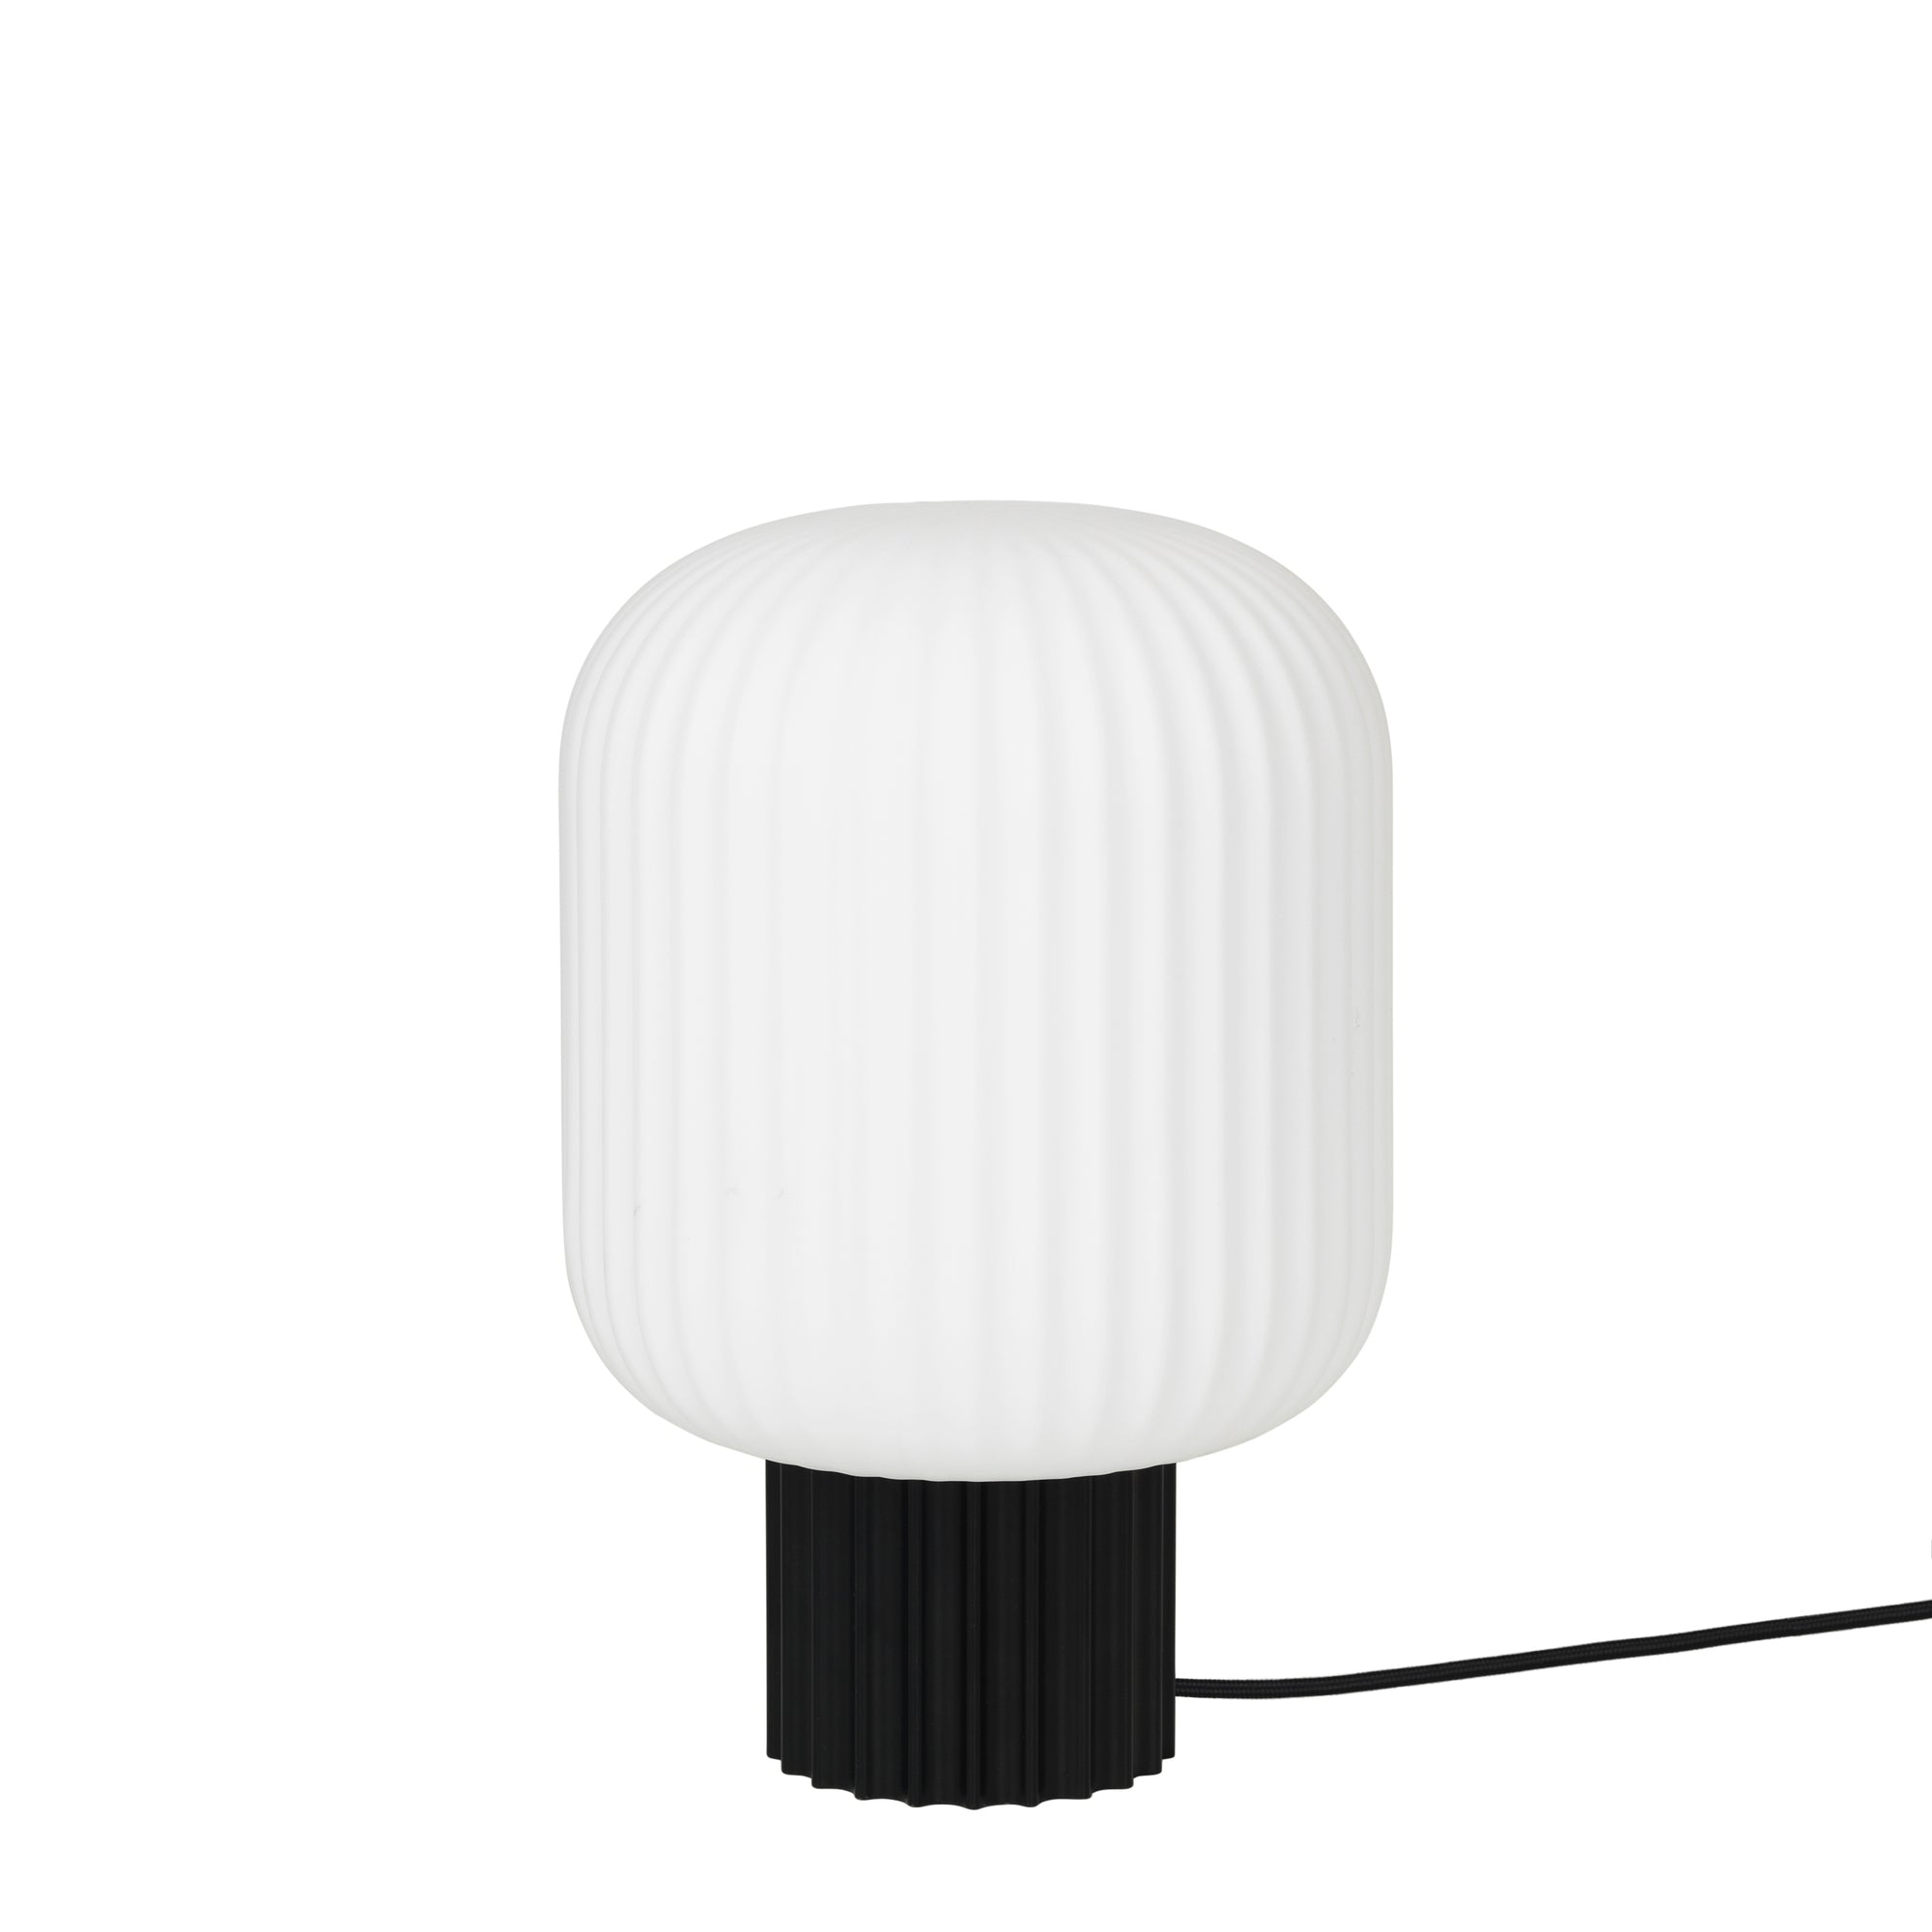 Broste Copenhagen Lighting Lolly Table Lamp Short Black/White